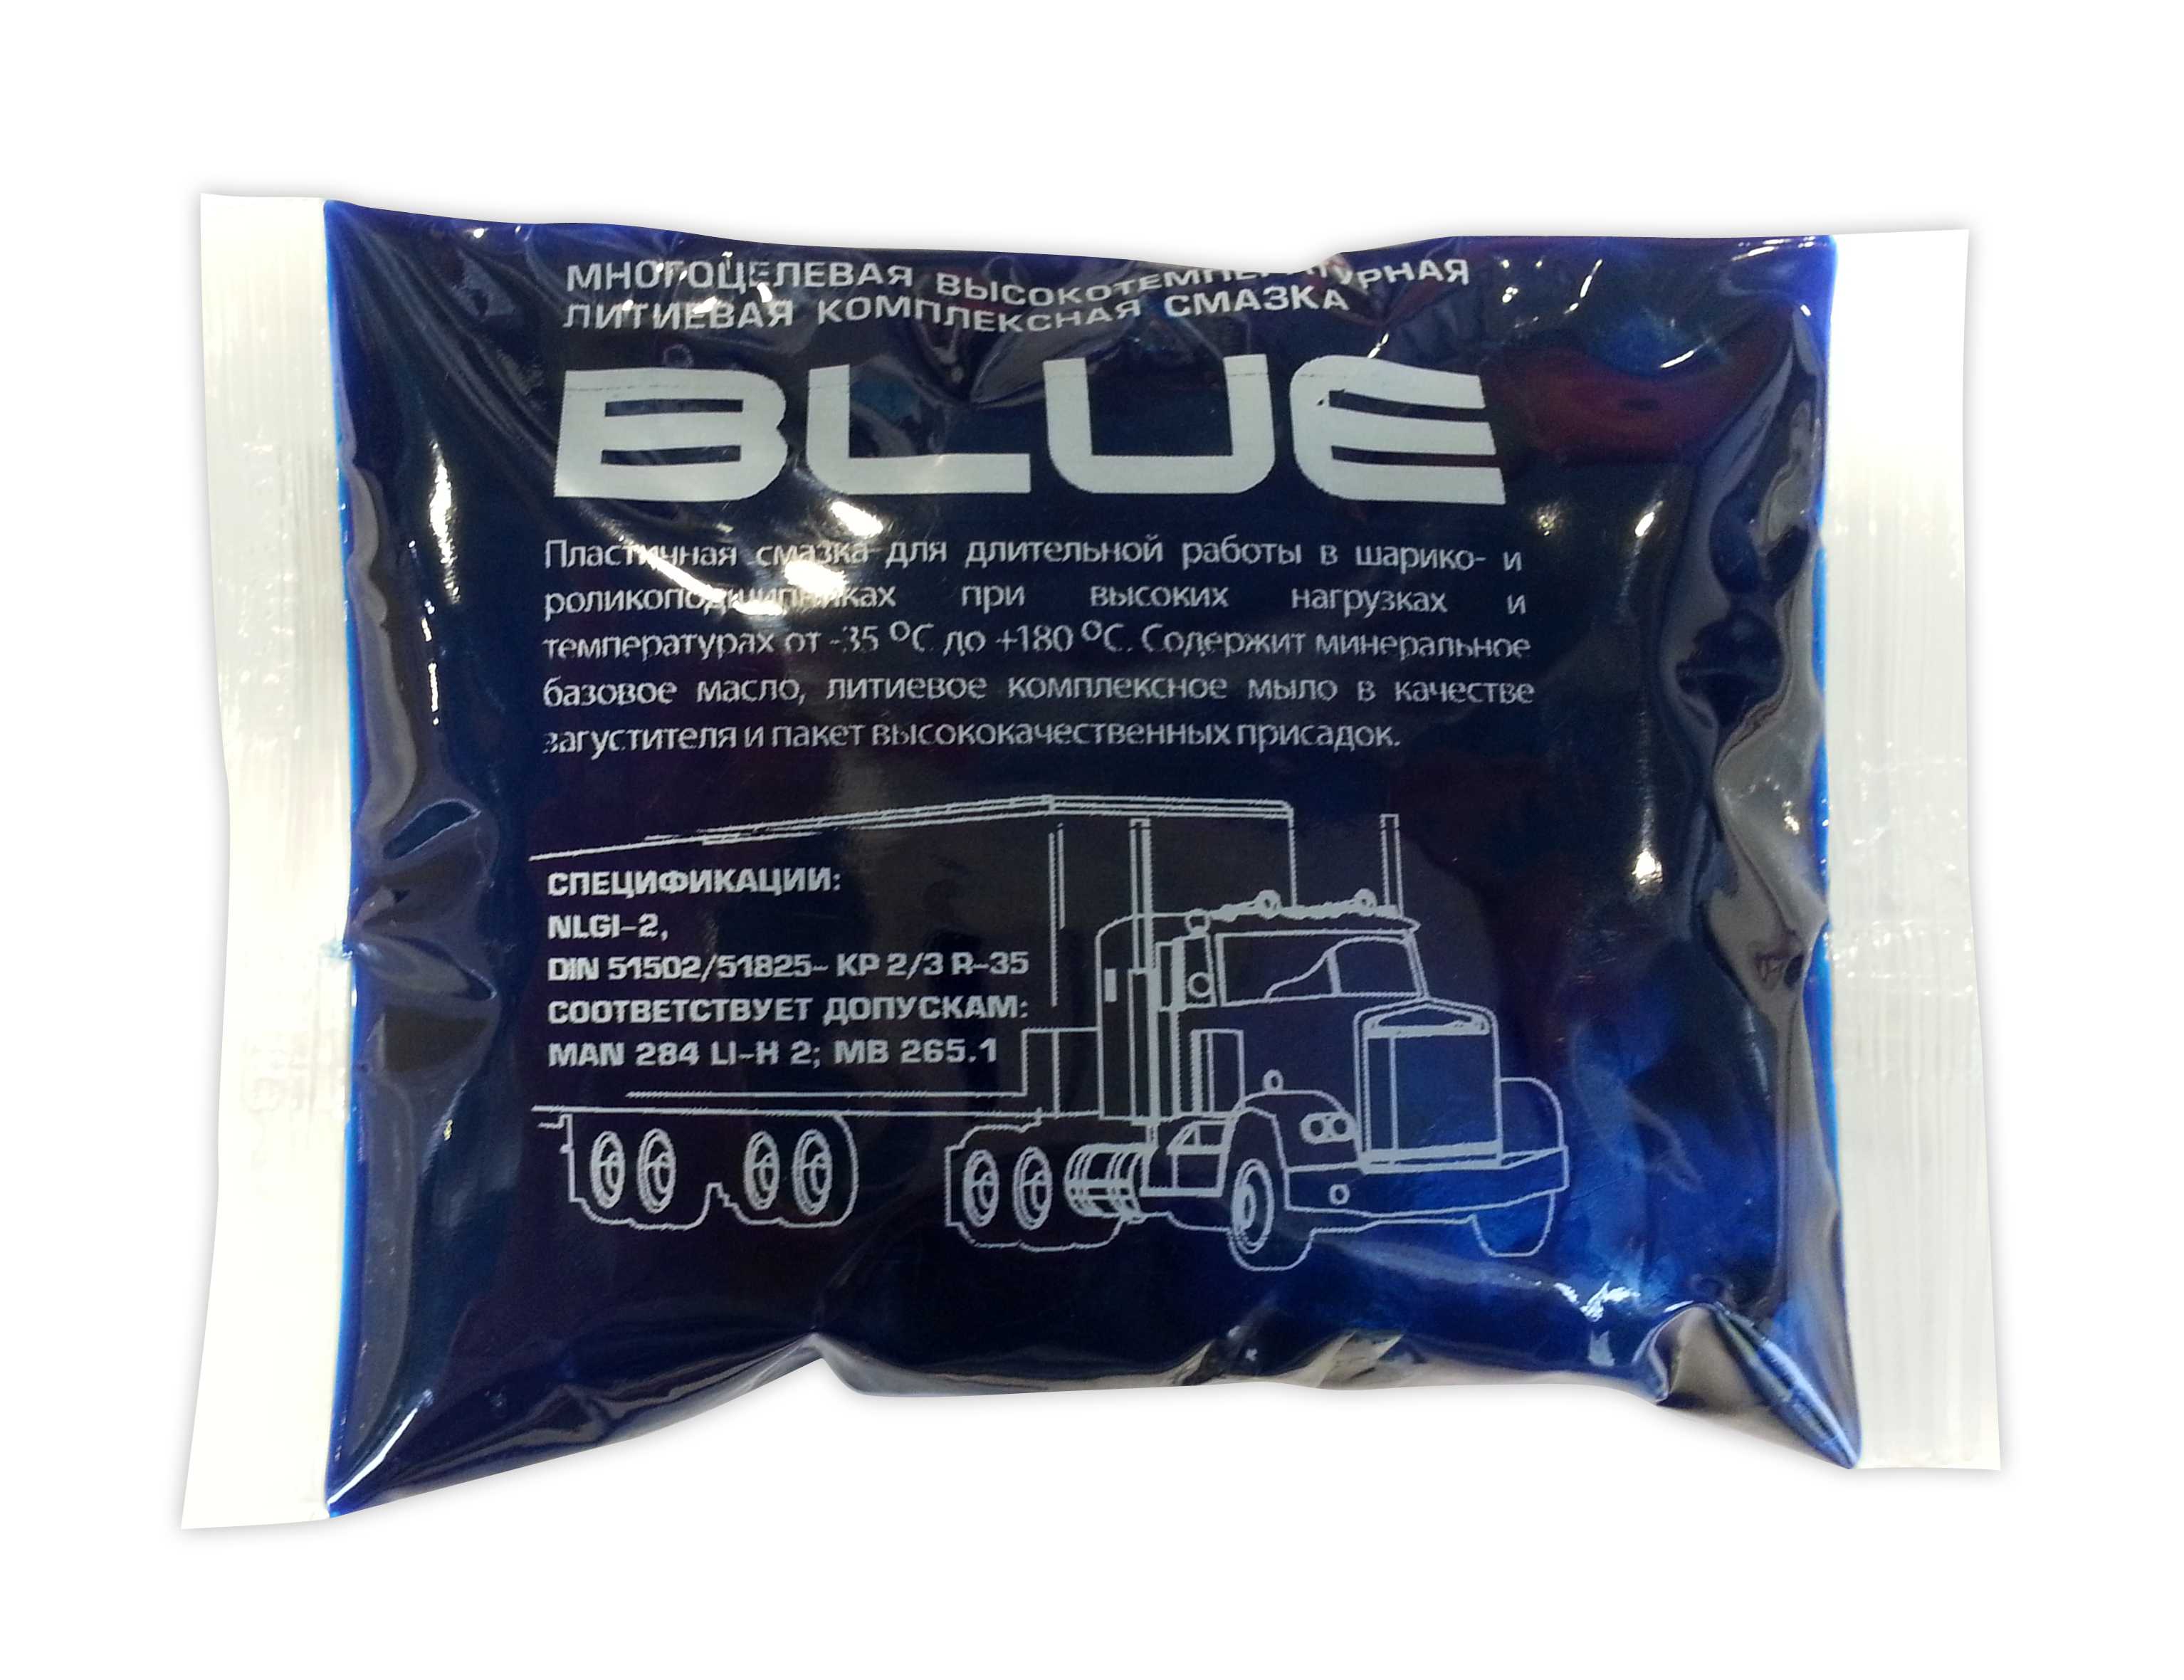 Трансмиссионное масло вмпавто. Смазка ВМПАВТО MC 1510 Blue. Смазка МС-1510 литиевая. Смазка литиевая ВМПАВТО MC-1510 Blue 80 г стик-пакет. Смазка литиевая высокотемпературная МС 1510 Blue стик-пакет 80г.